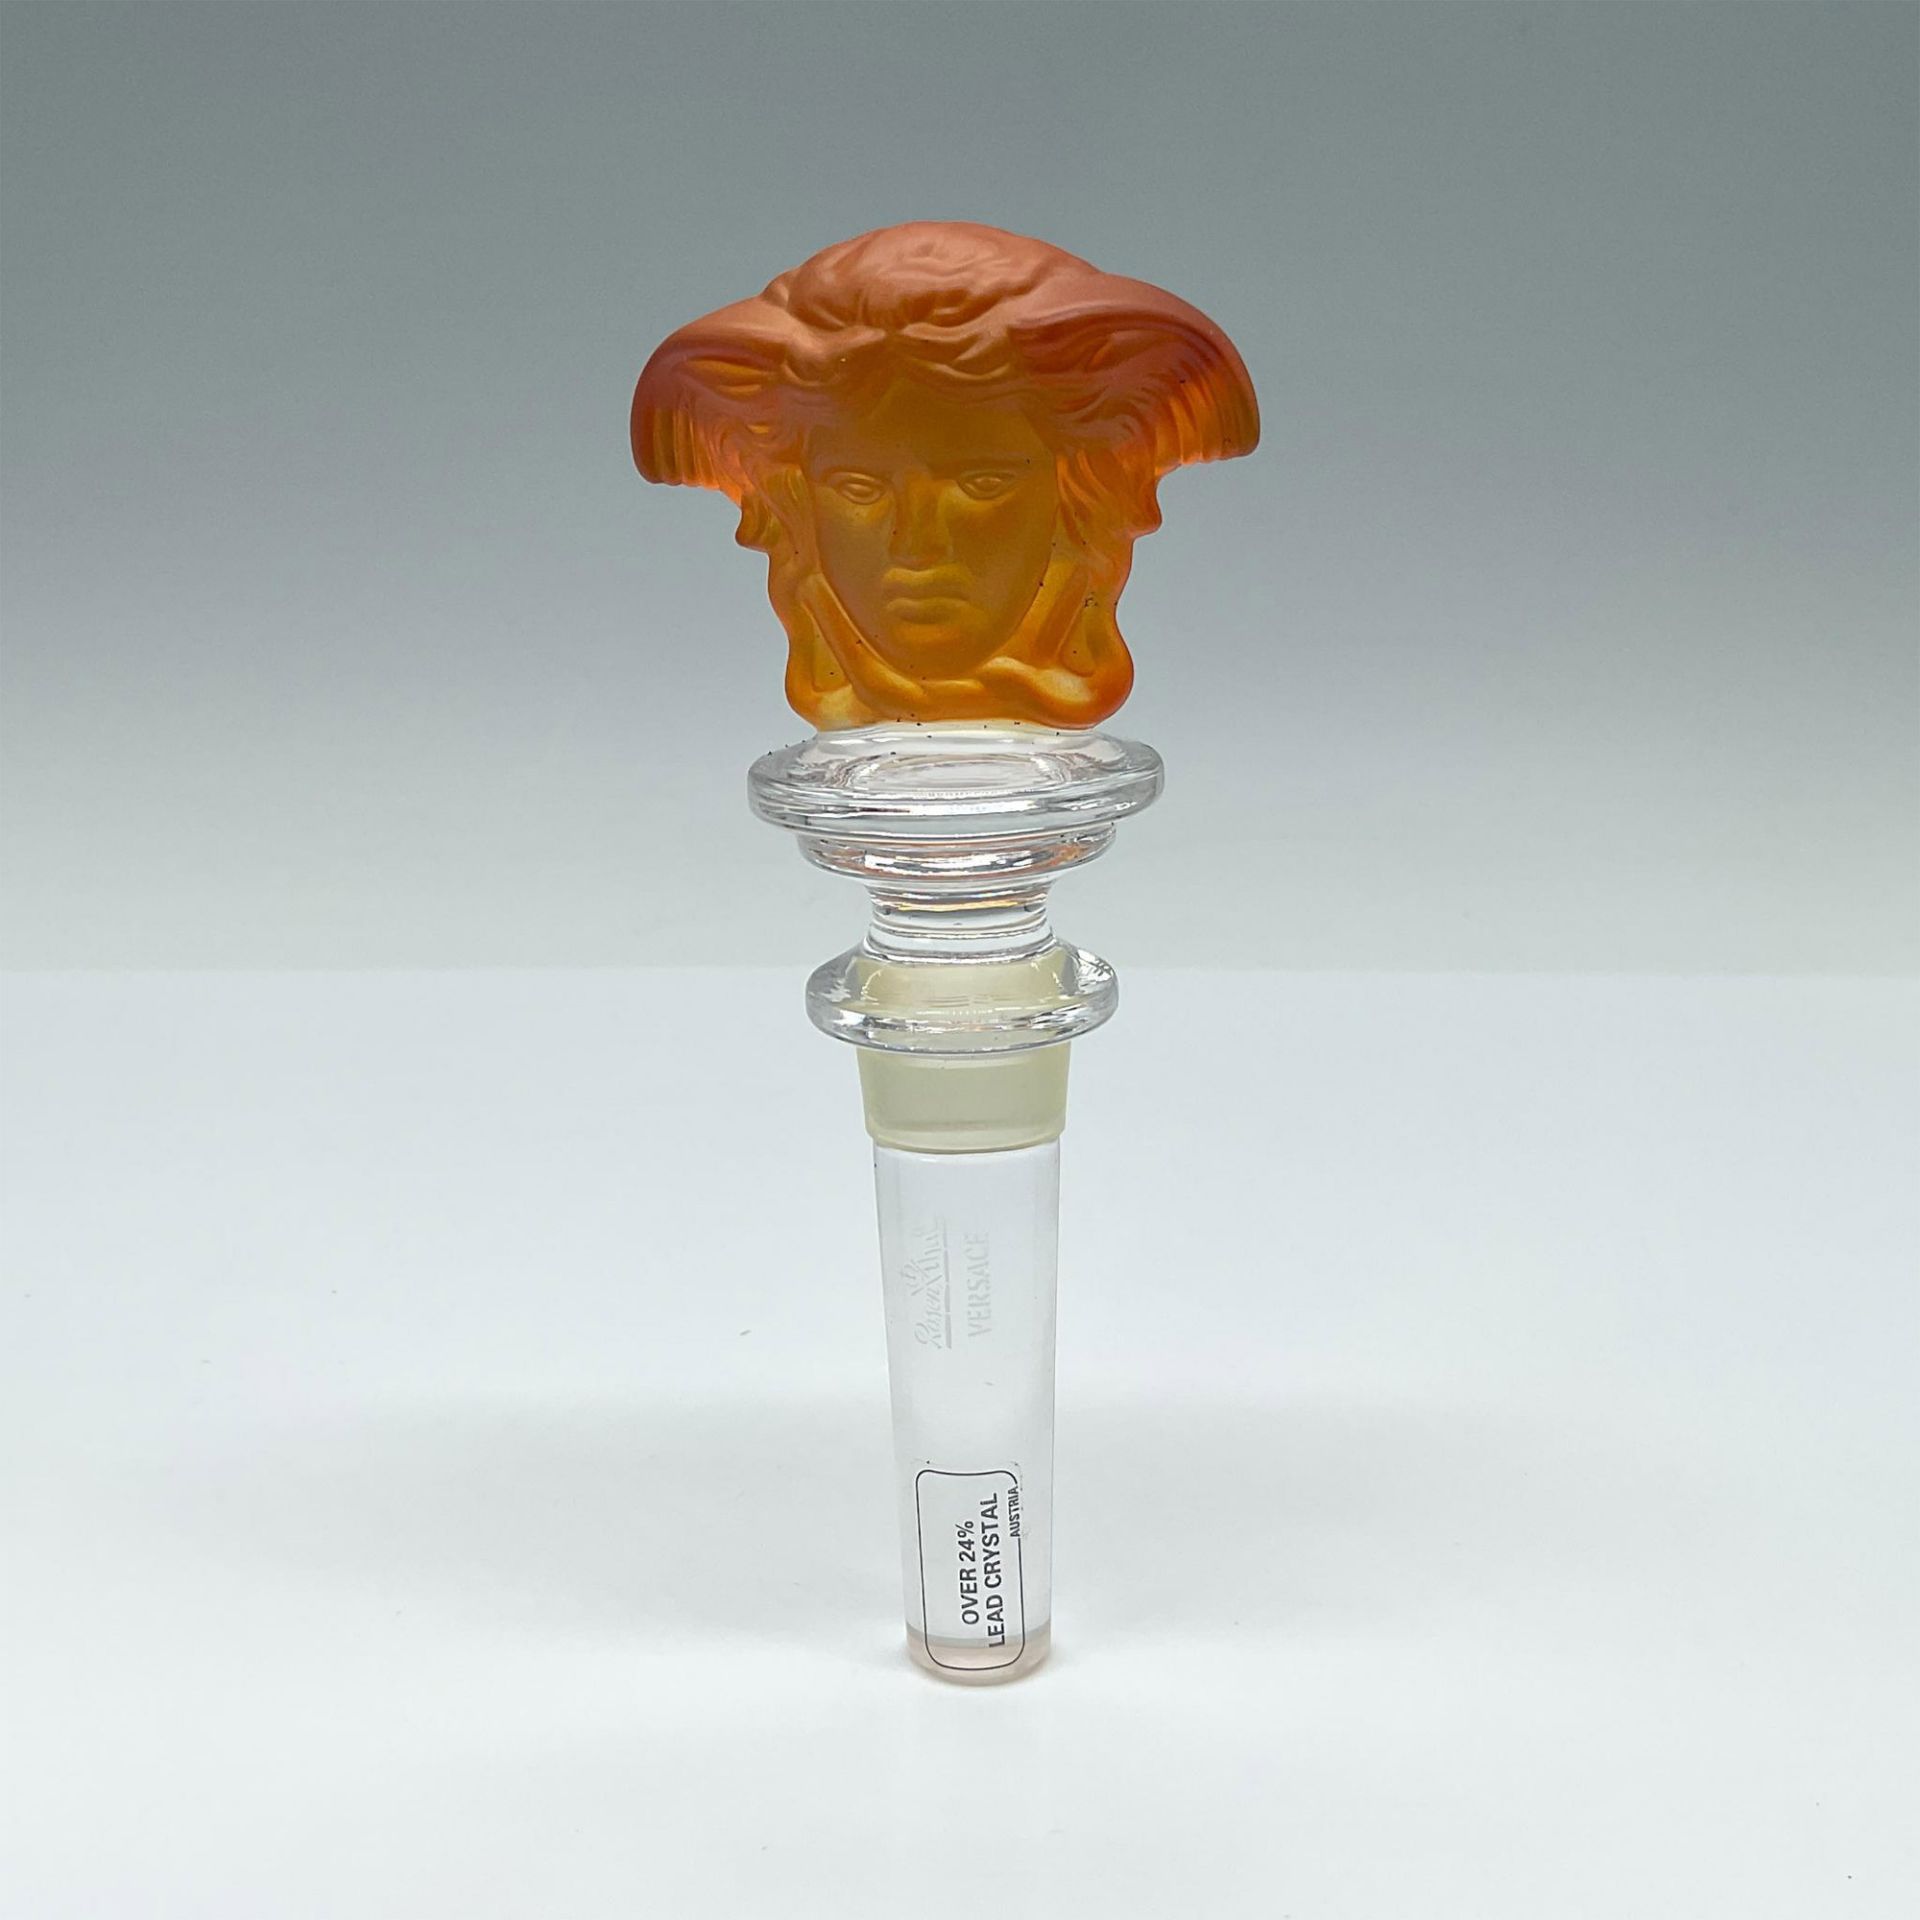 Rosenthal Versace Medusa Head Crystal Bottle Stopper, Orange